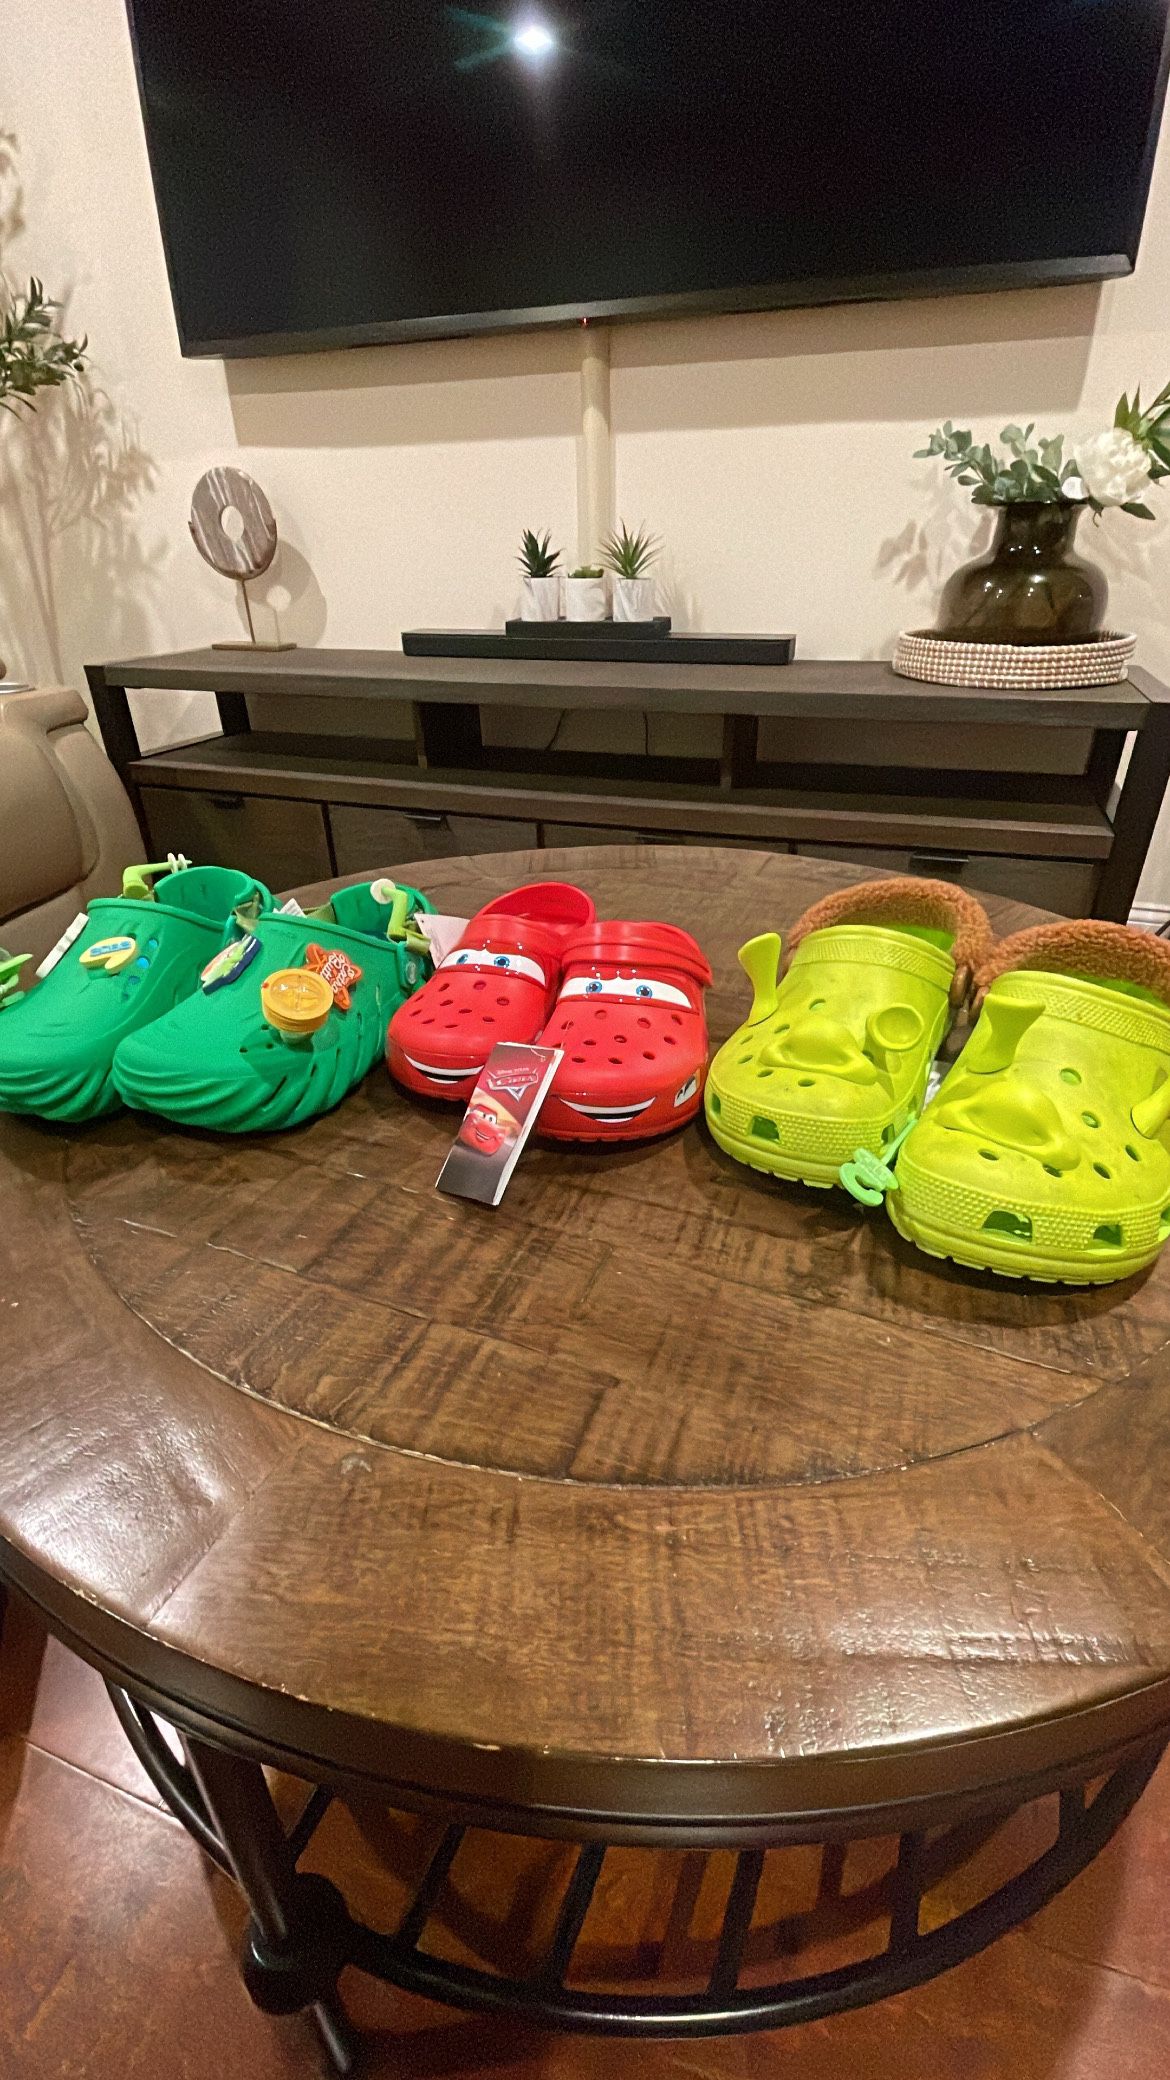 Crocs Jetson, Lightning McQueen, Shrek sizes available. 